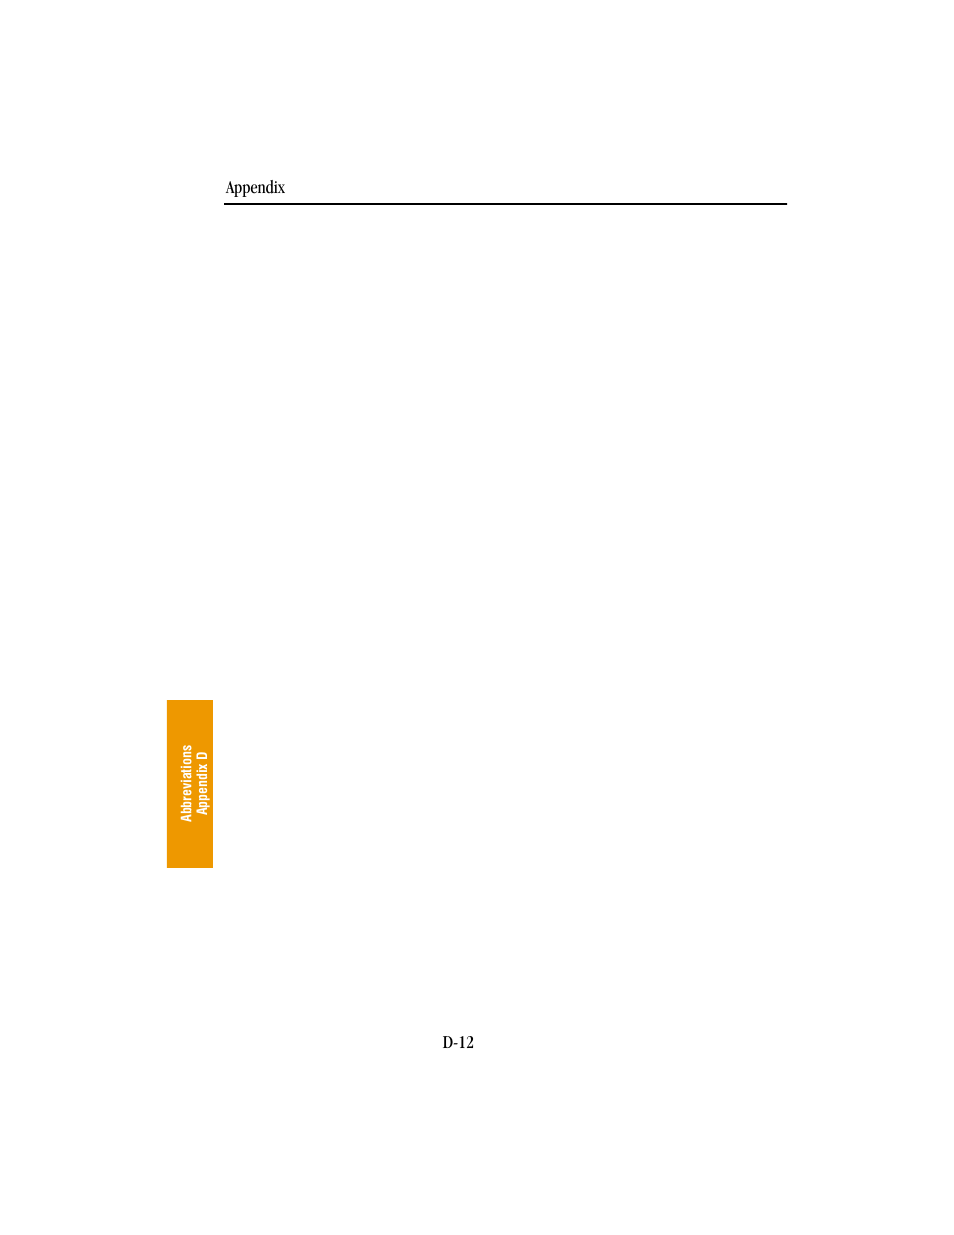 BendixKing KLN 89B - Pilots Guide User Manual | Page 219 / 246